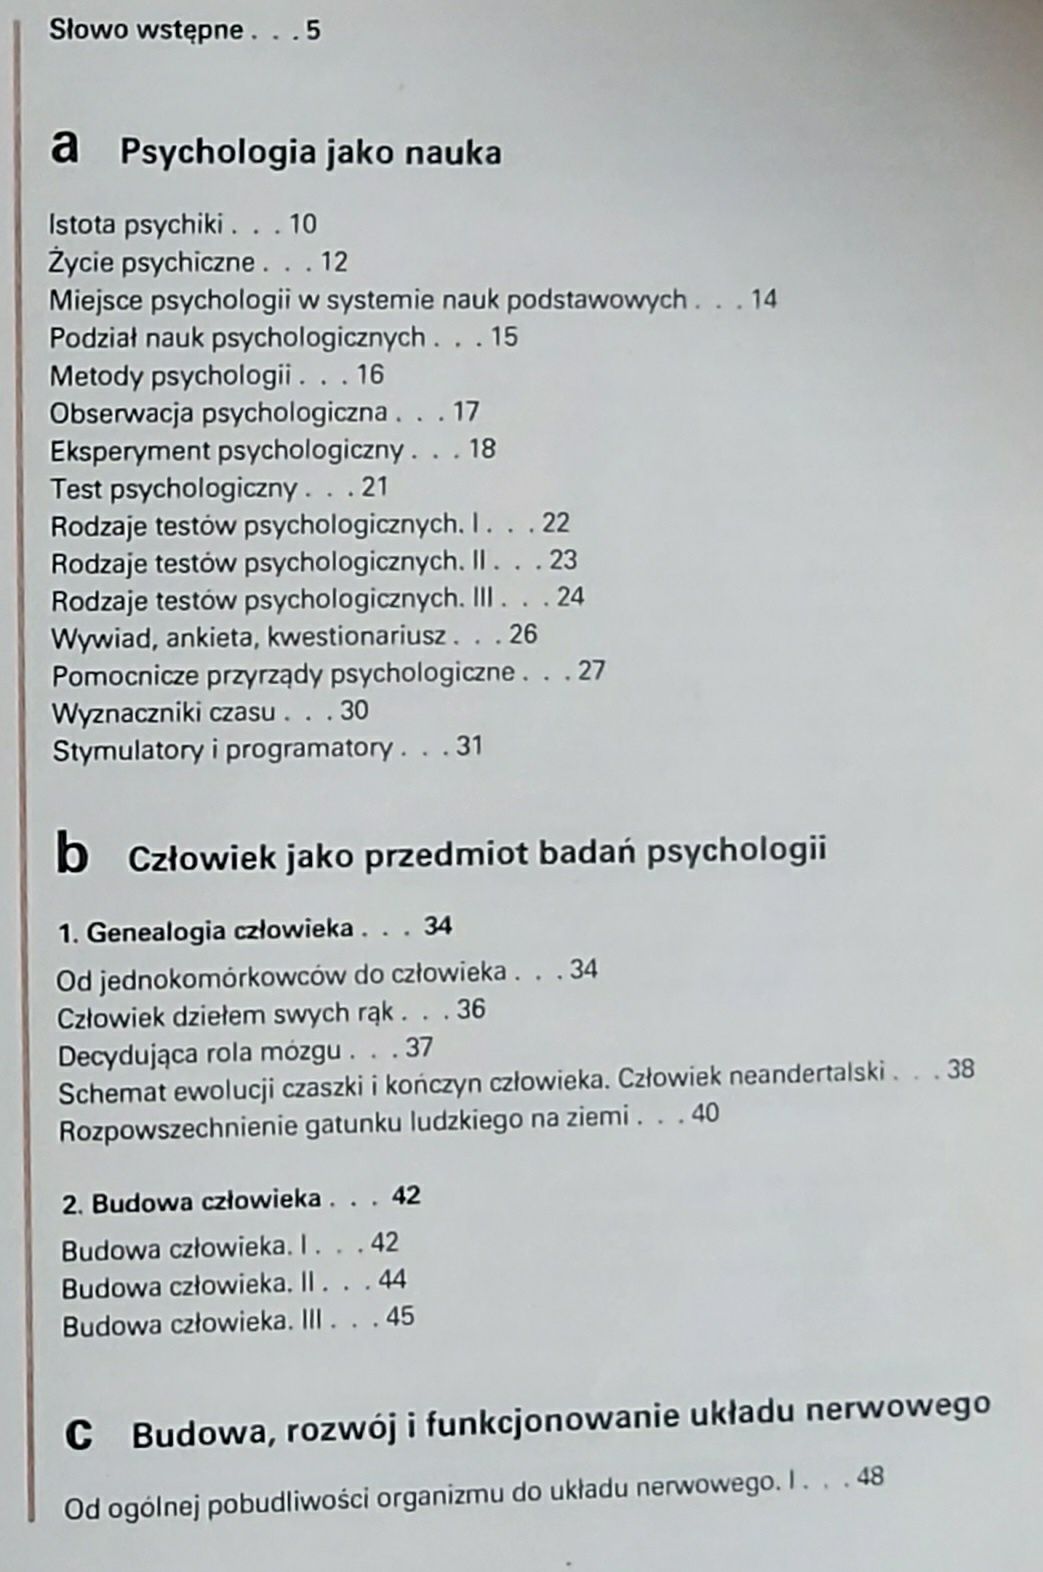 Szewczuk Atlas psychologiczny 1979